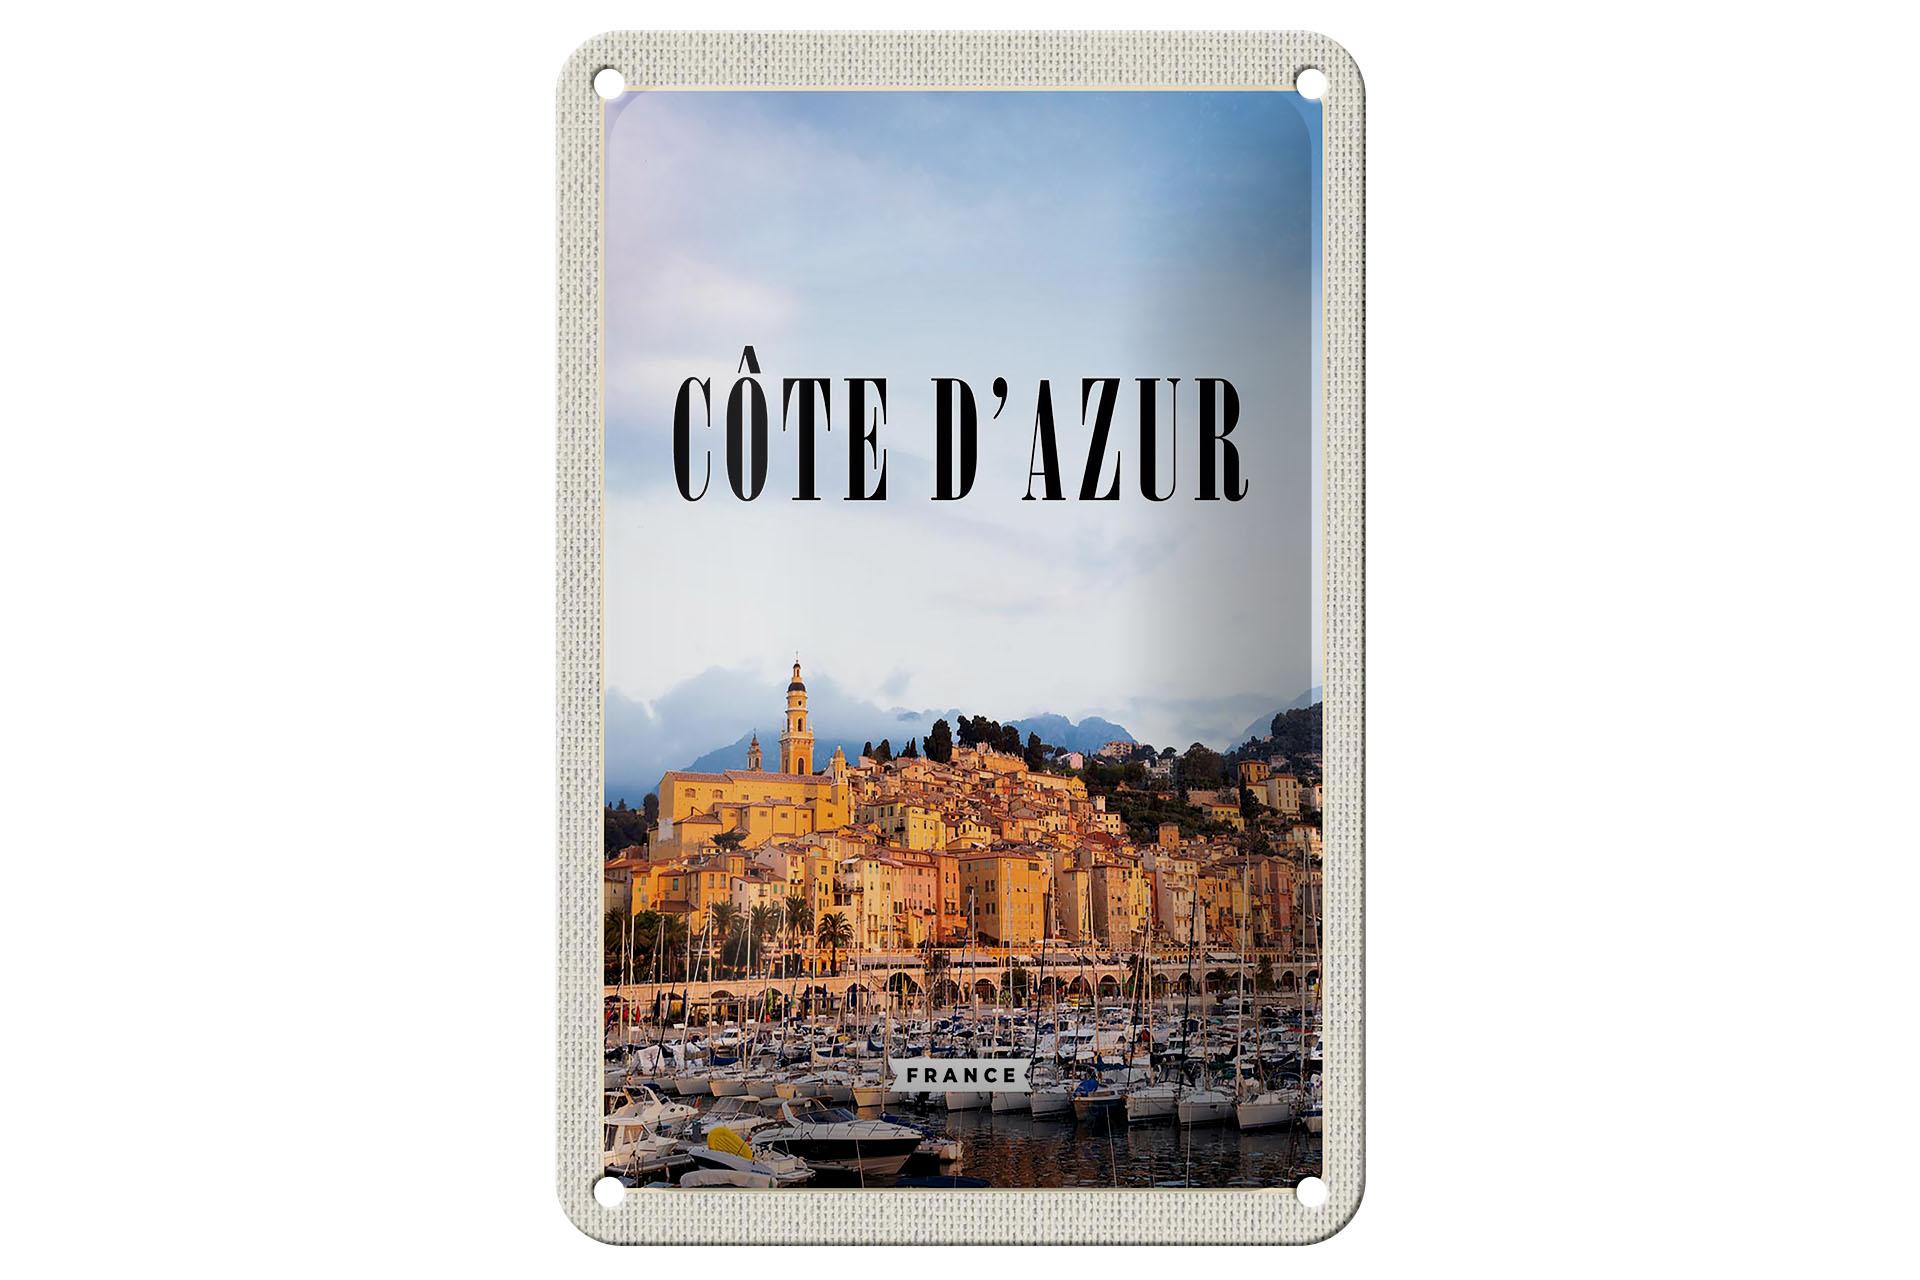 Blechschild Reise 12x18 cm Cote d'Azur France Panorama Bild Deko Schild